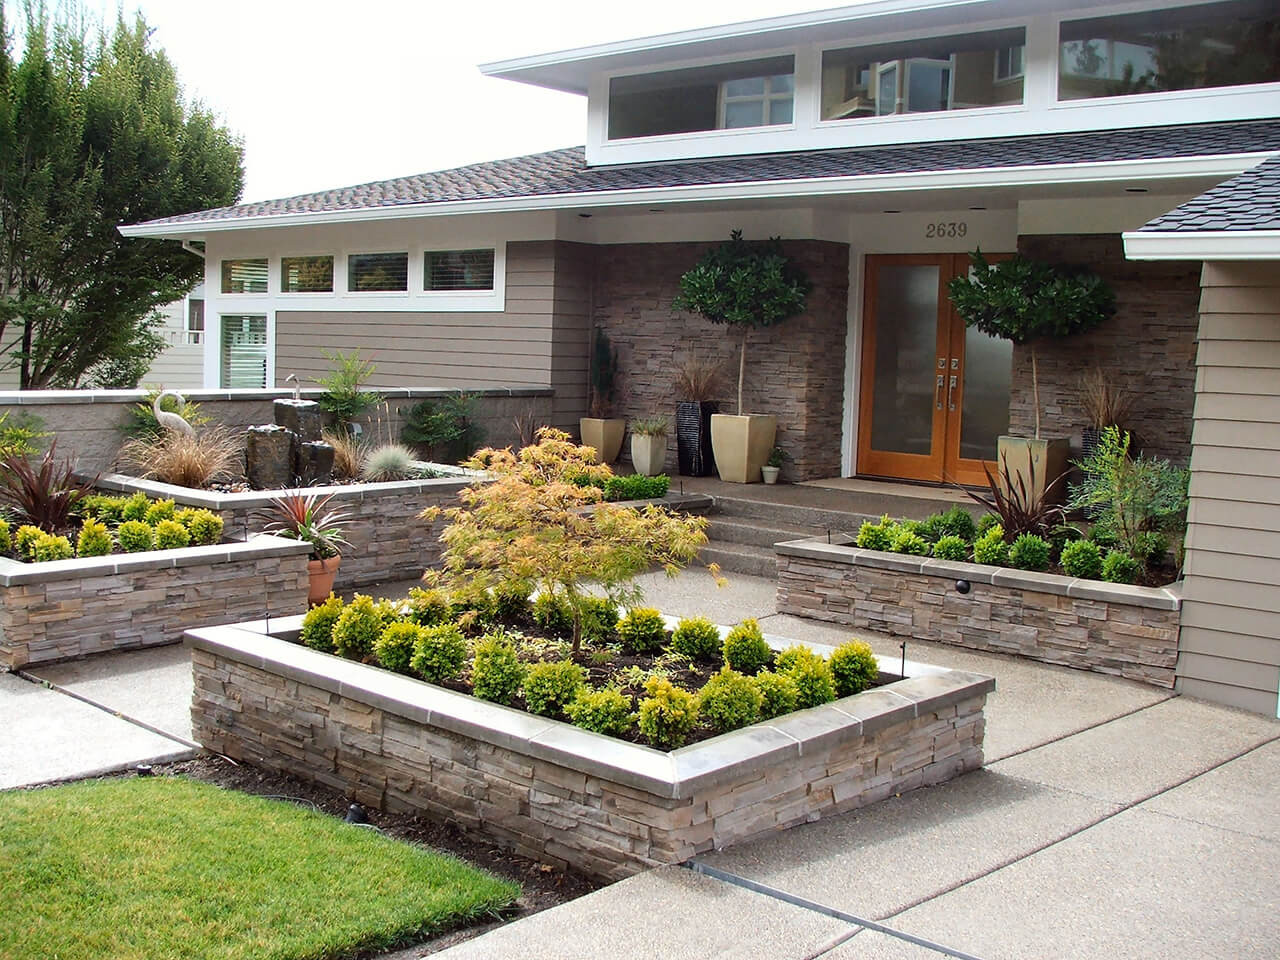 Best ideas about Front Yard Landscape Ideas
. Save or Pin 50 Best Front Yard Landscaping Ideas and Garden Designs Now.